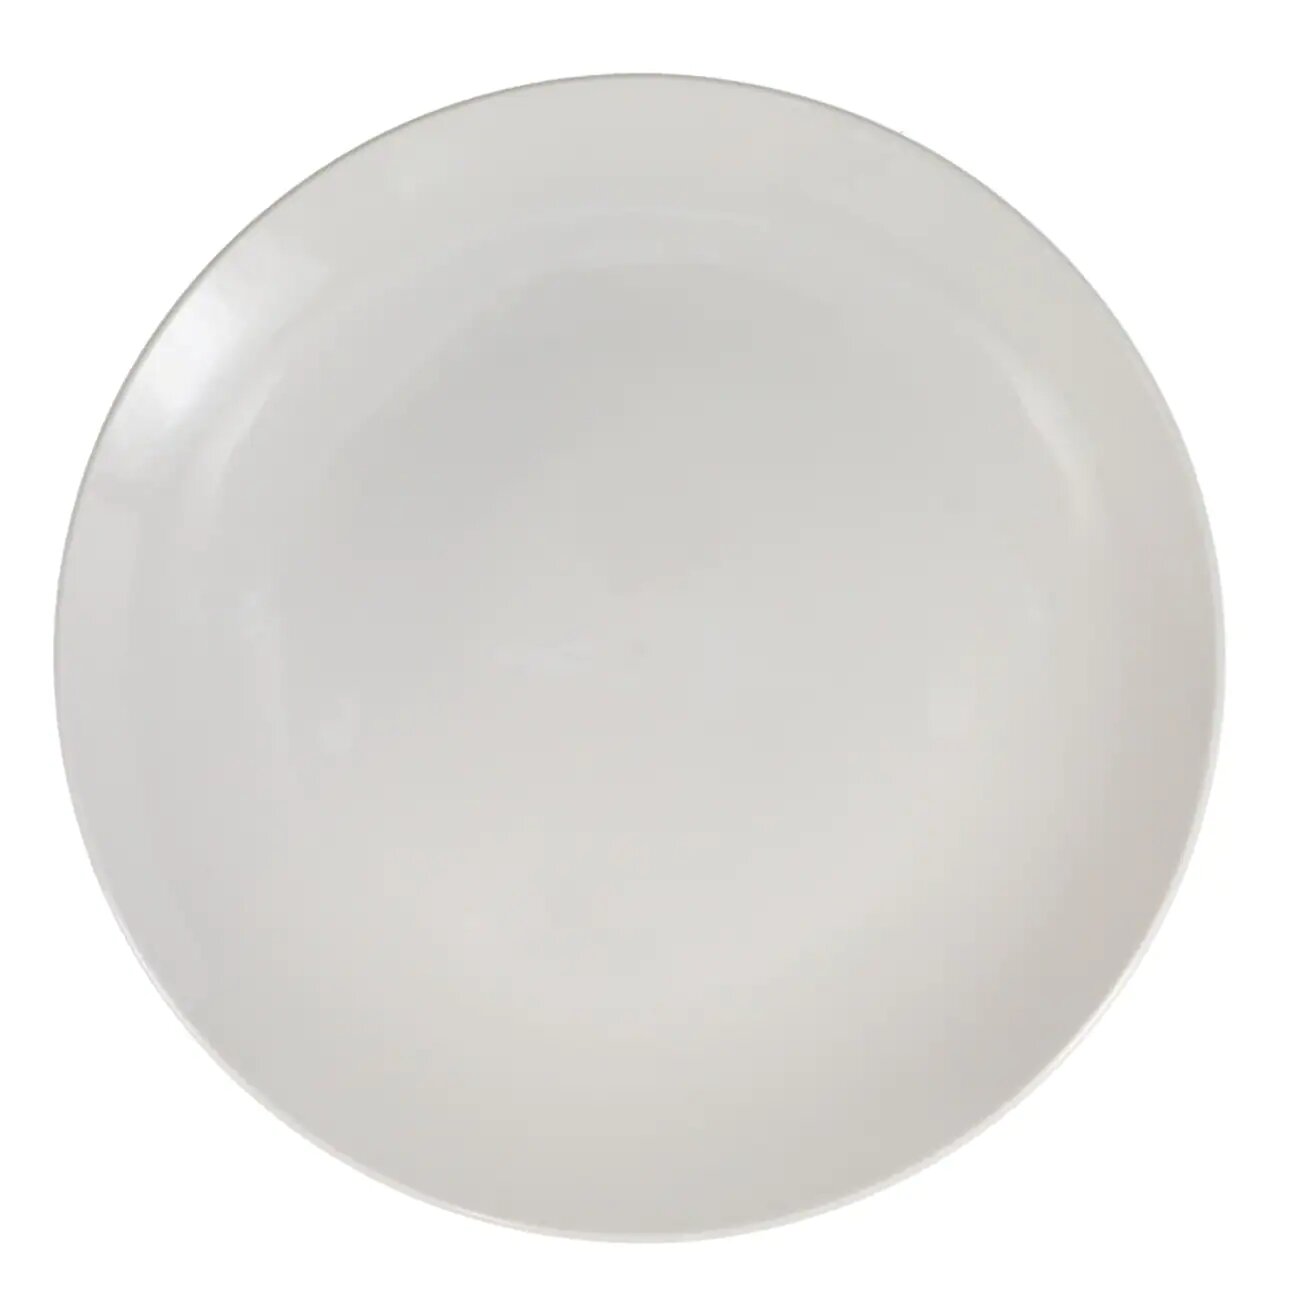 10.5" Ceramic White Dinner Plate